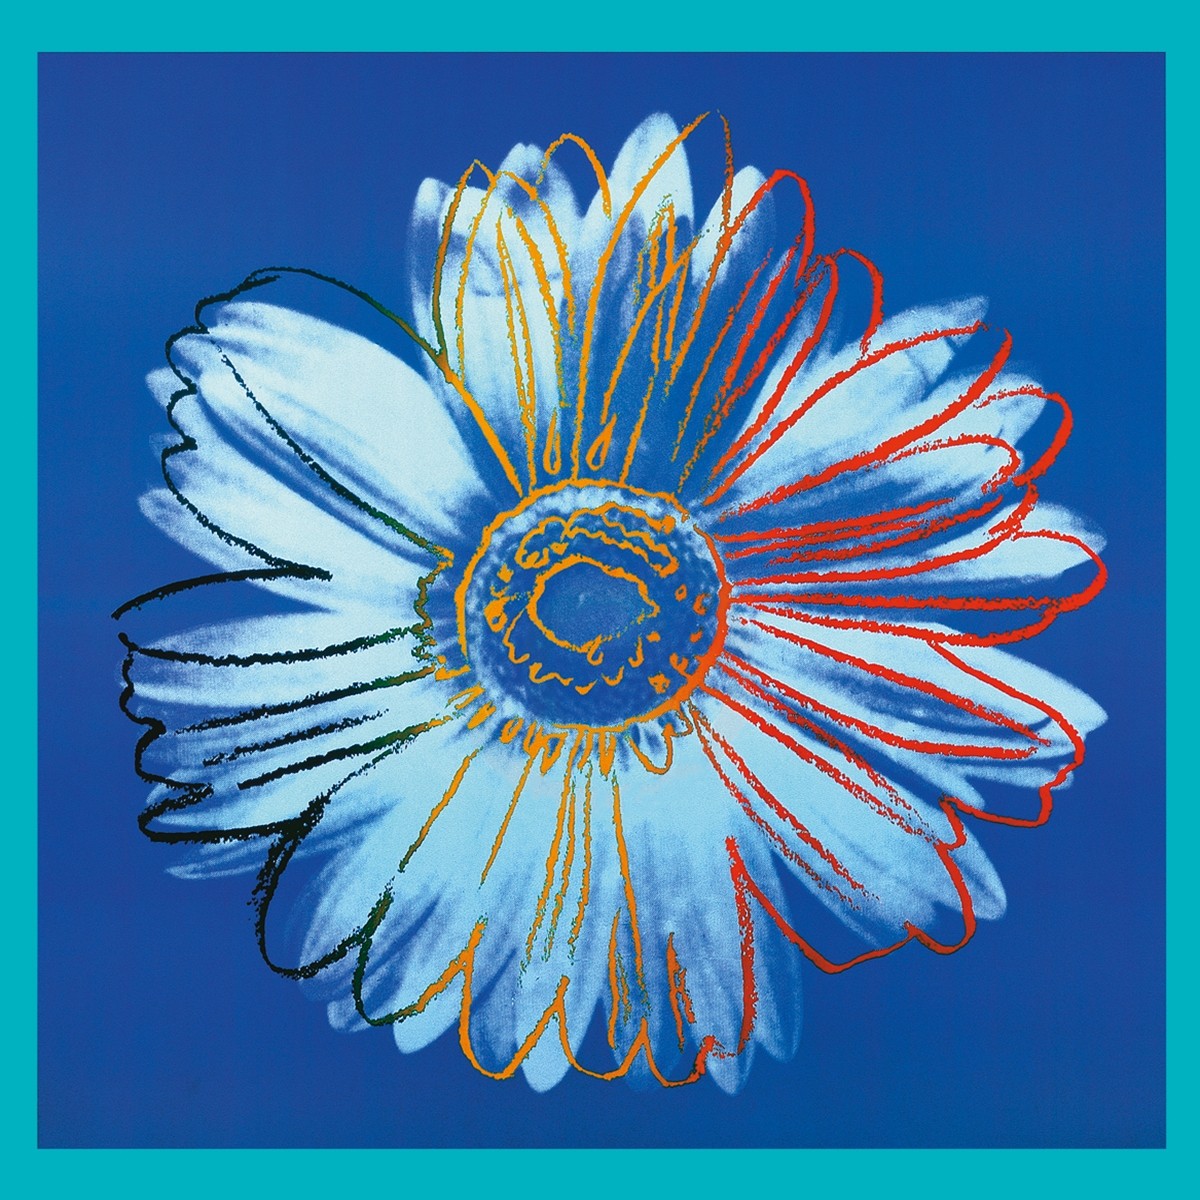 Andy Warhol, Daisy, 1982 (Klassische Moderne, Amerikanische Kunst, Pop Art, Gänseblümchen, Pflanzen, Blumen, Blüten, Wohnzimmer, Business, Arztpraxis, Büro, blau)